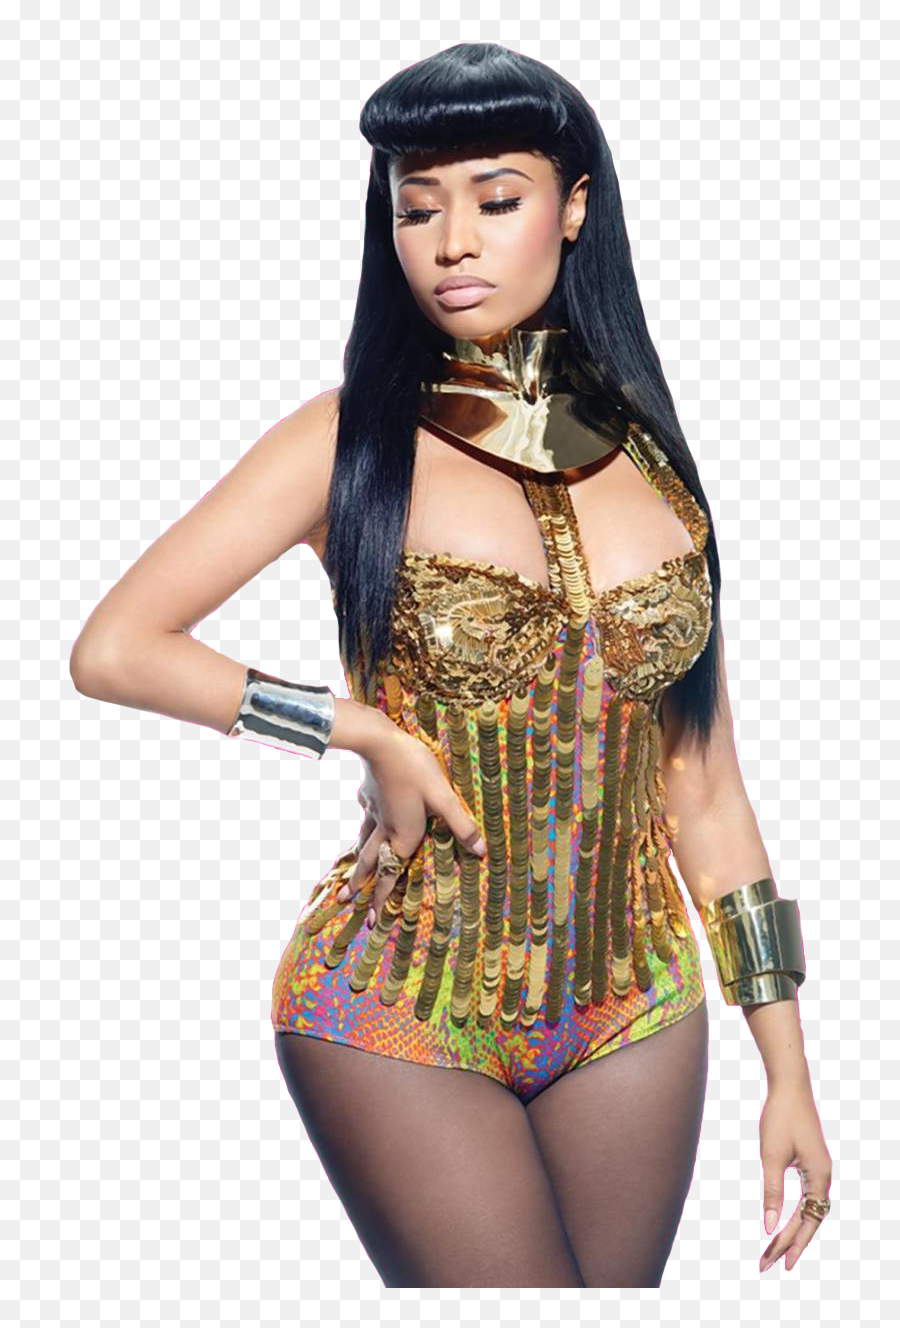 Nicki Minaj Png 2015 5 Image - Nicki Minaj Kendrick Lamar,Nicki Minaj Png